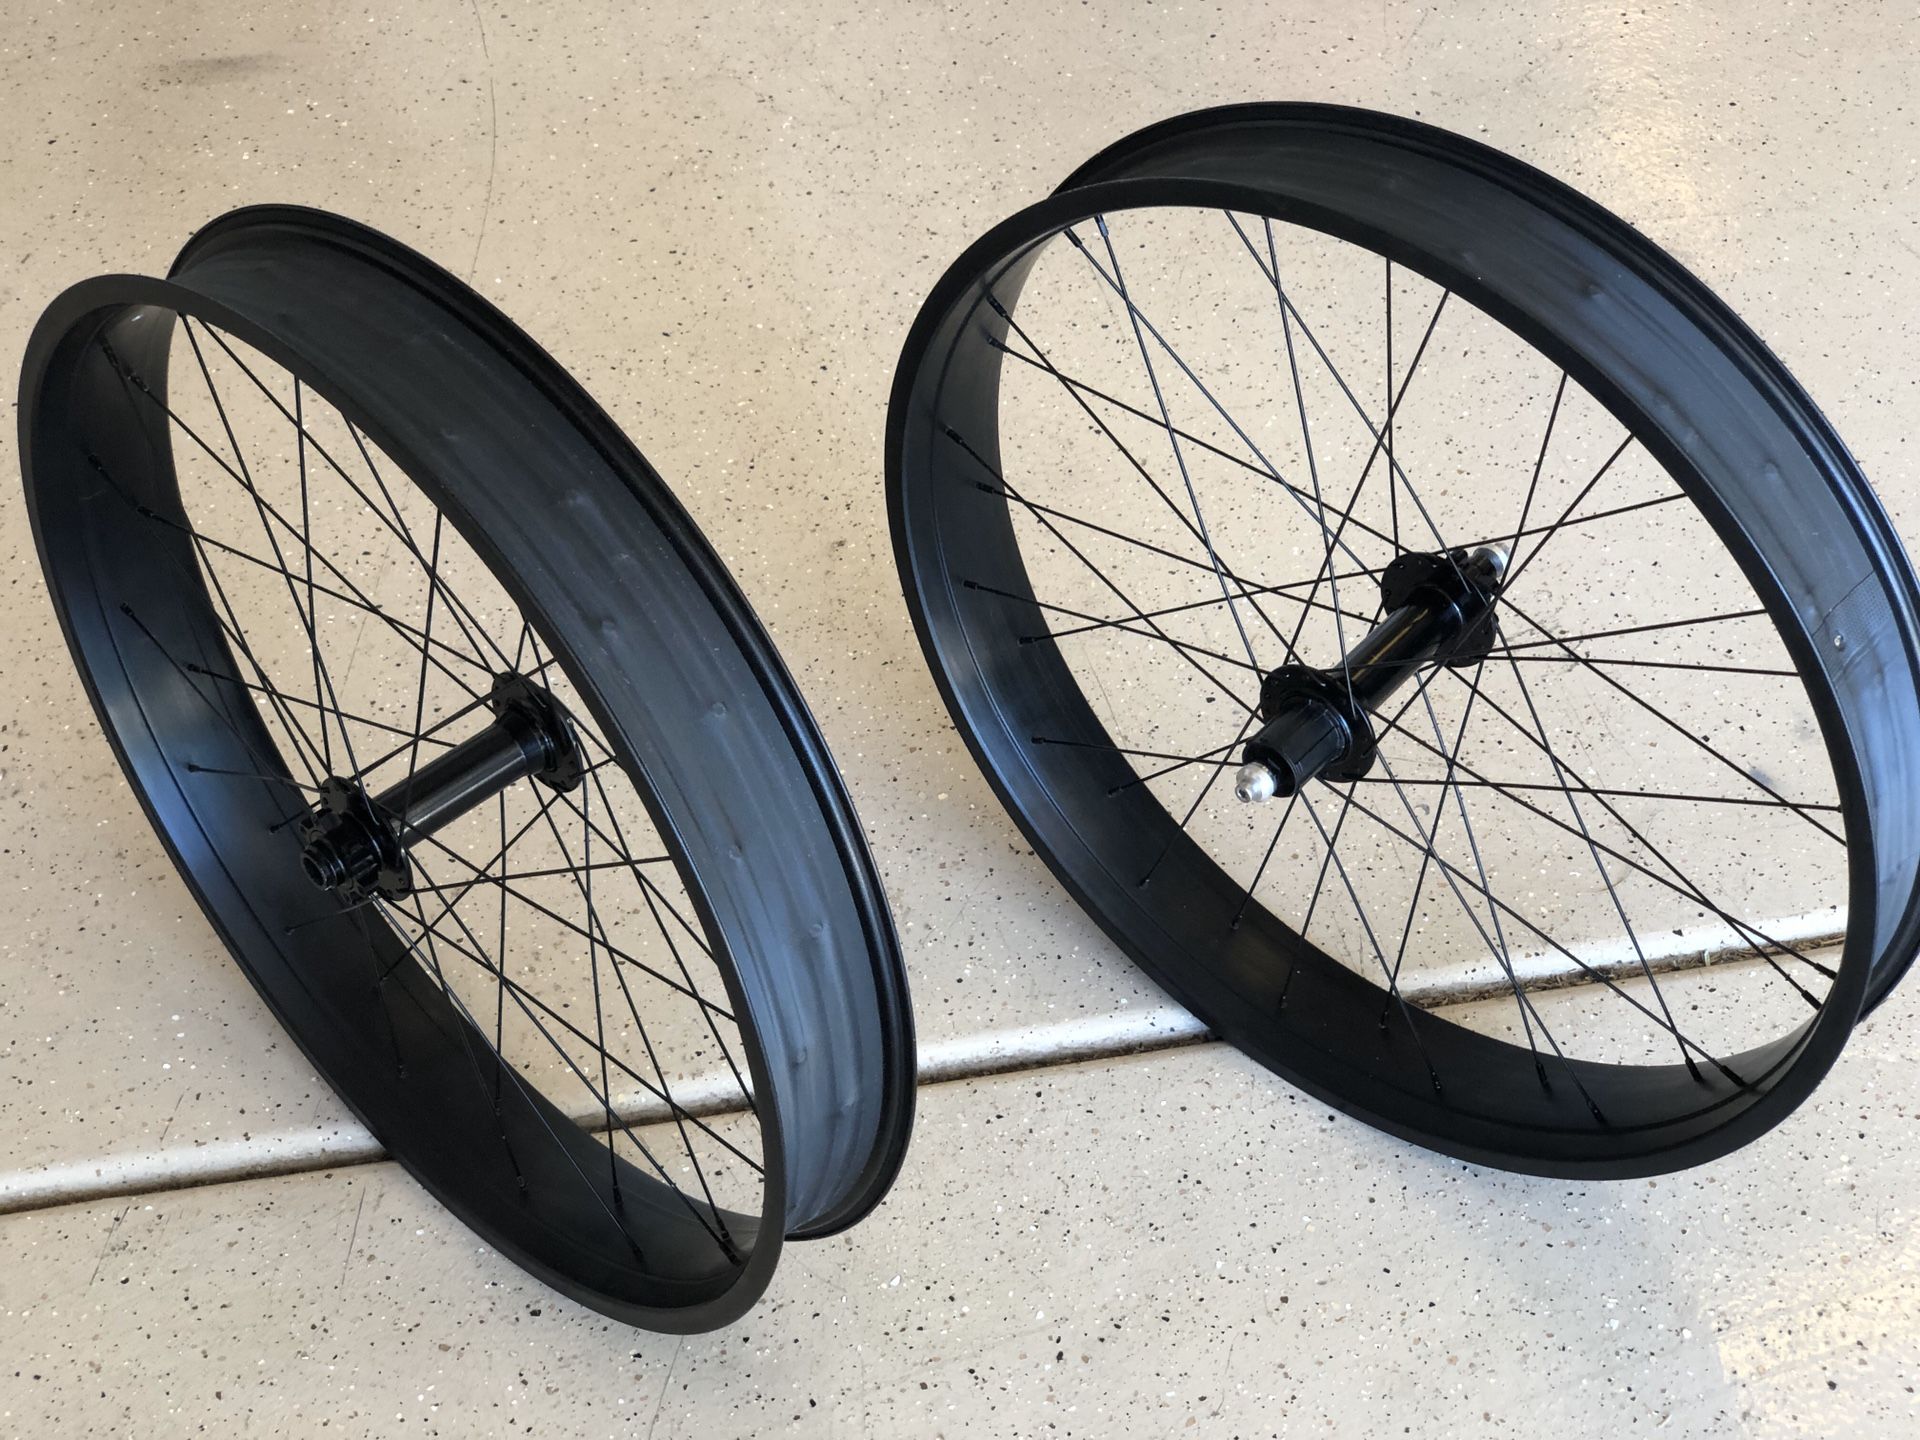 Fatbike wheels